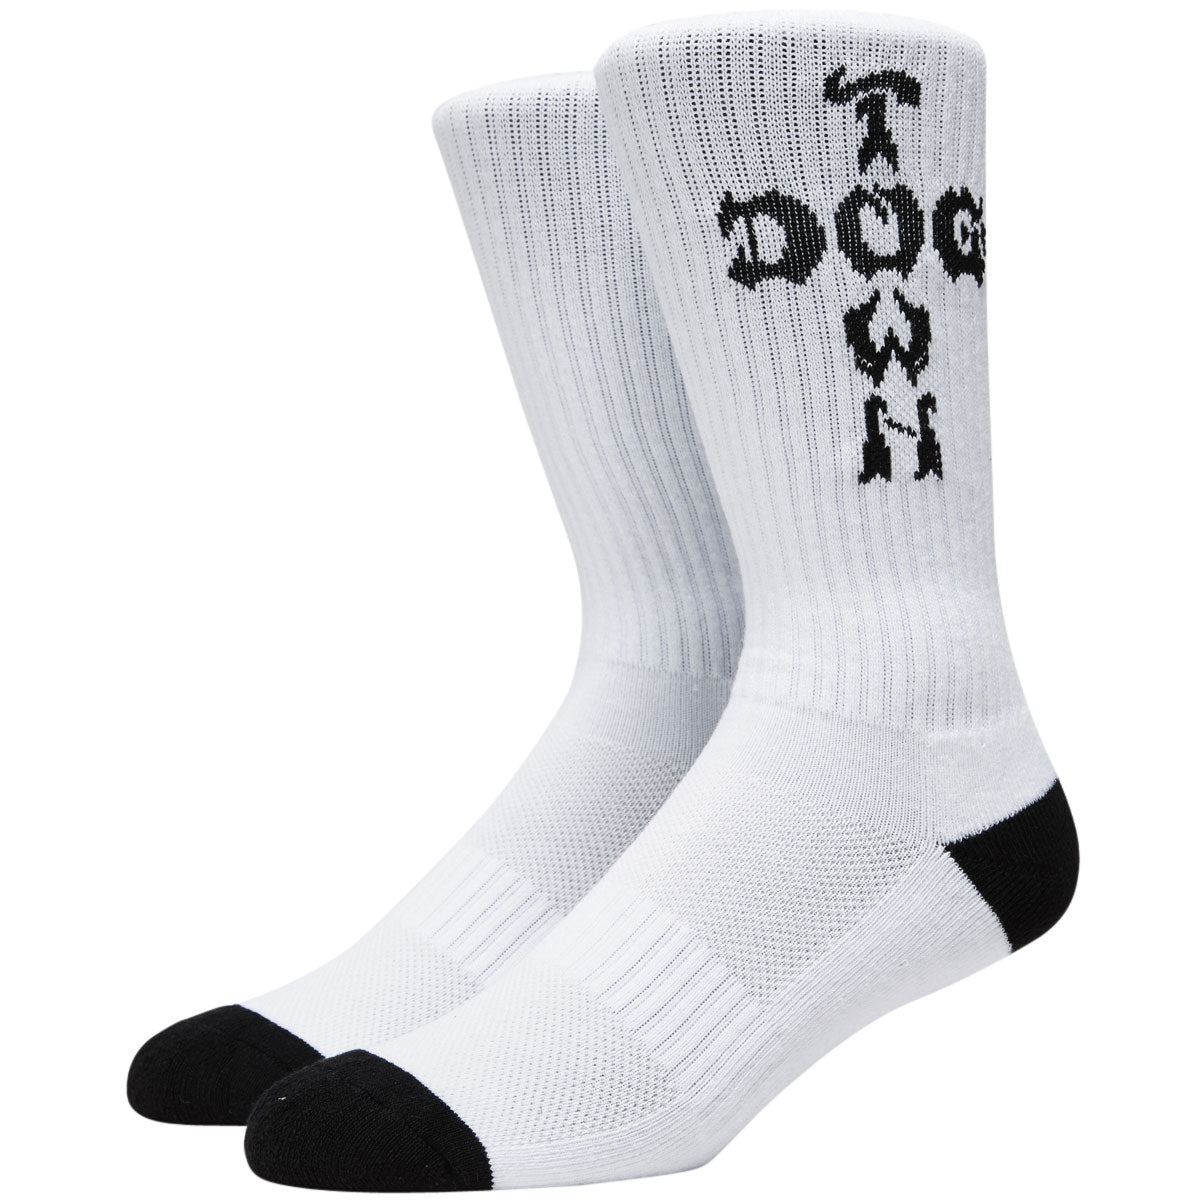 Dogtown Cross Letters Crew Socks - White/Black image 1